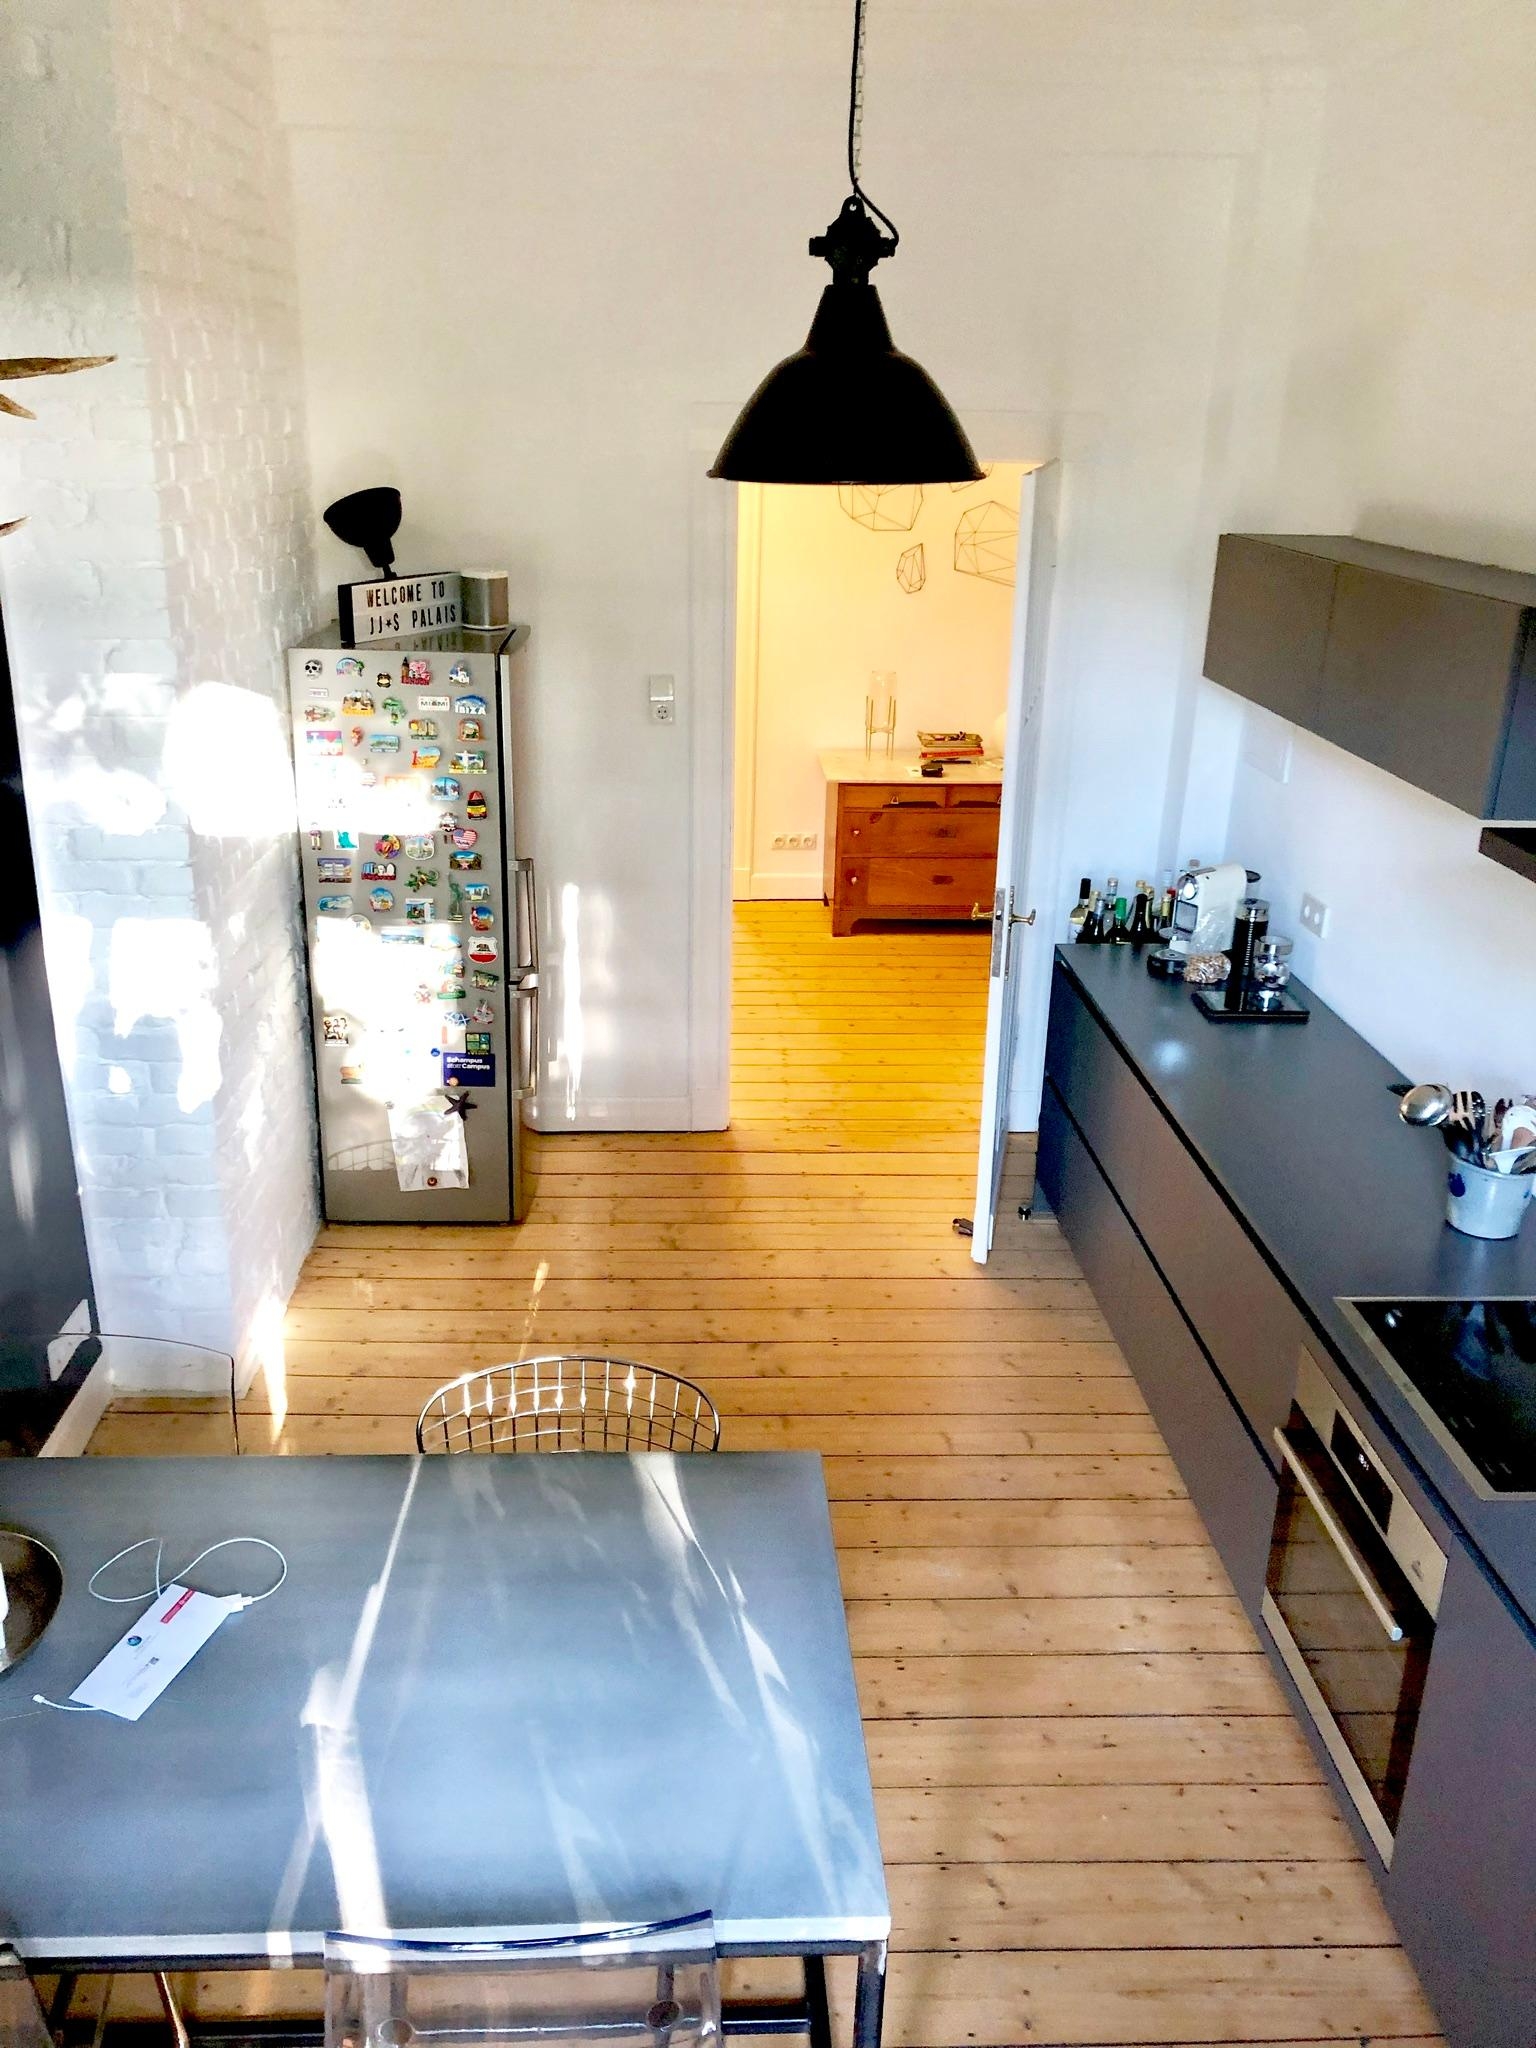 Mit sonnigen Erinnerungen im Rücken in die neue Woche! #kitchen #kueche #altbau #altbauliebe #dielenboden #minimalismus 